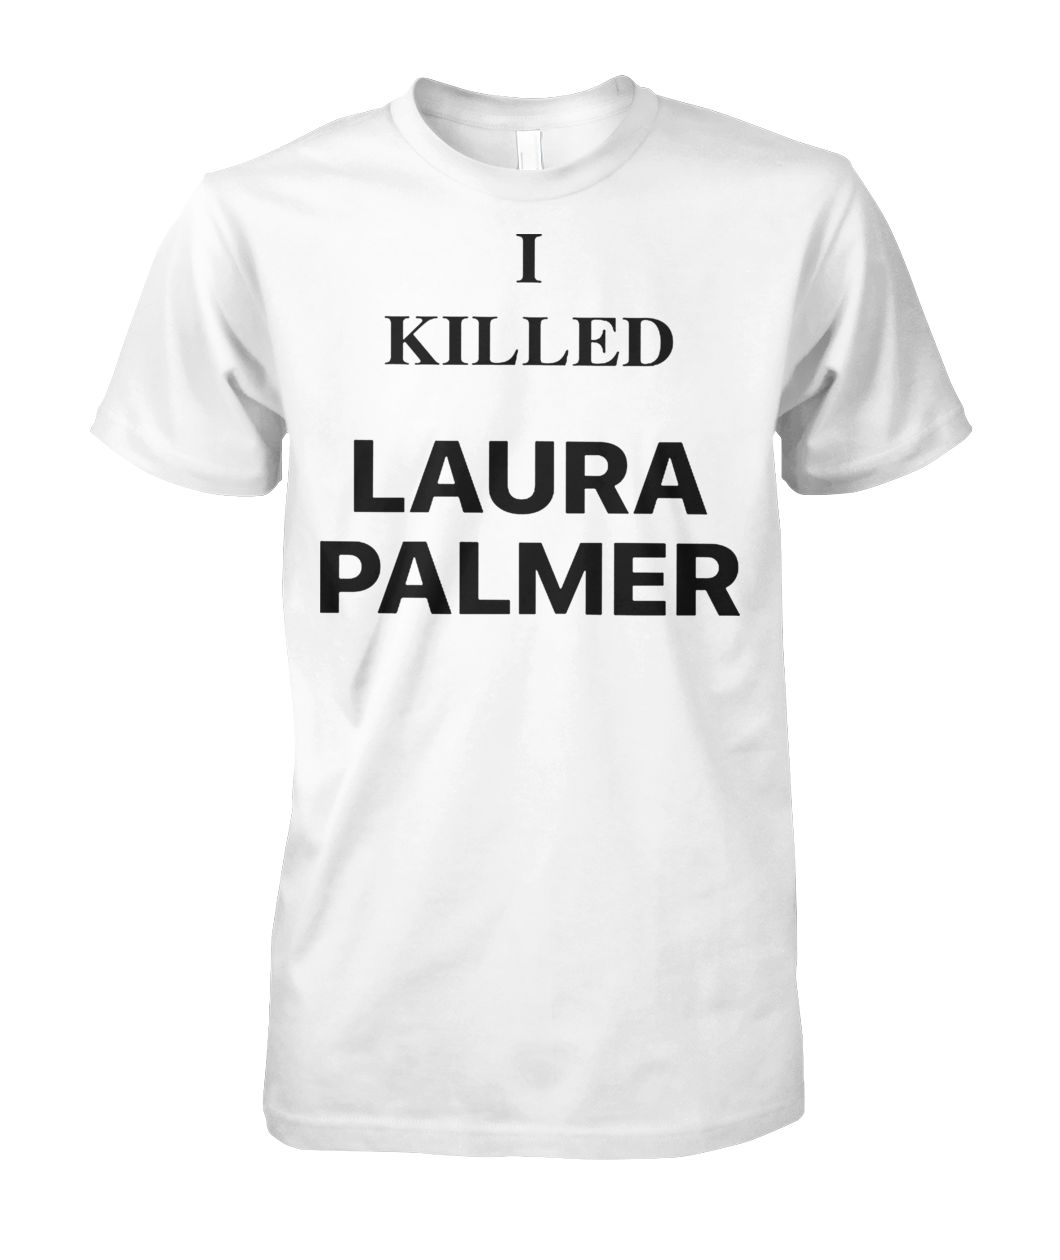 i killed laura palmer shirt